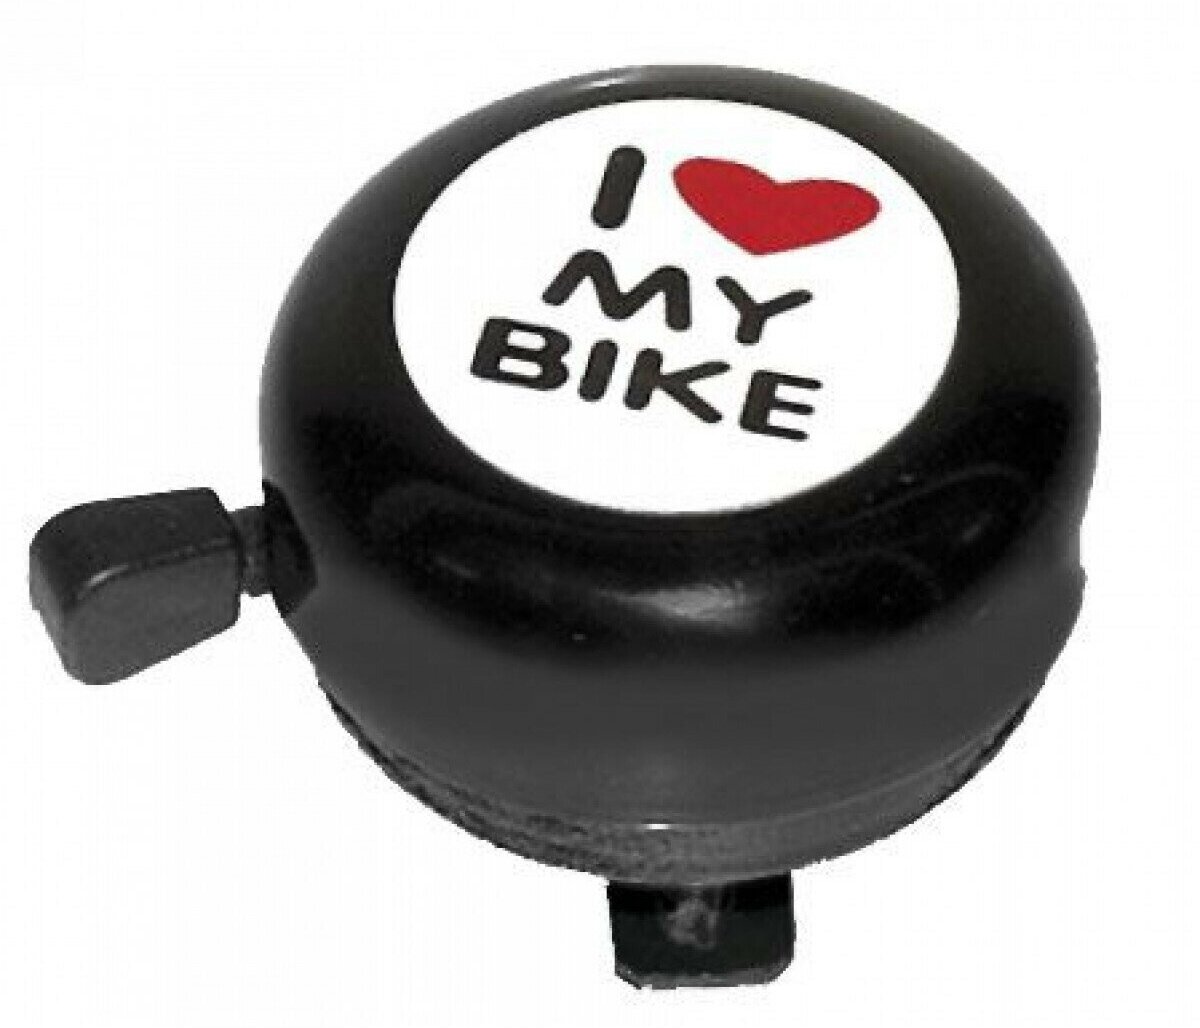 Звонок велосипедный стальной, детский, черный с рисунком "I love my bike"